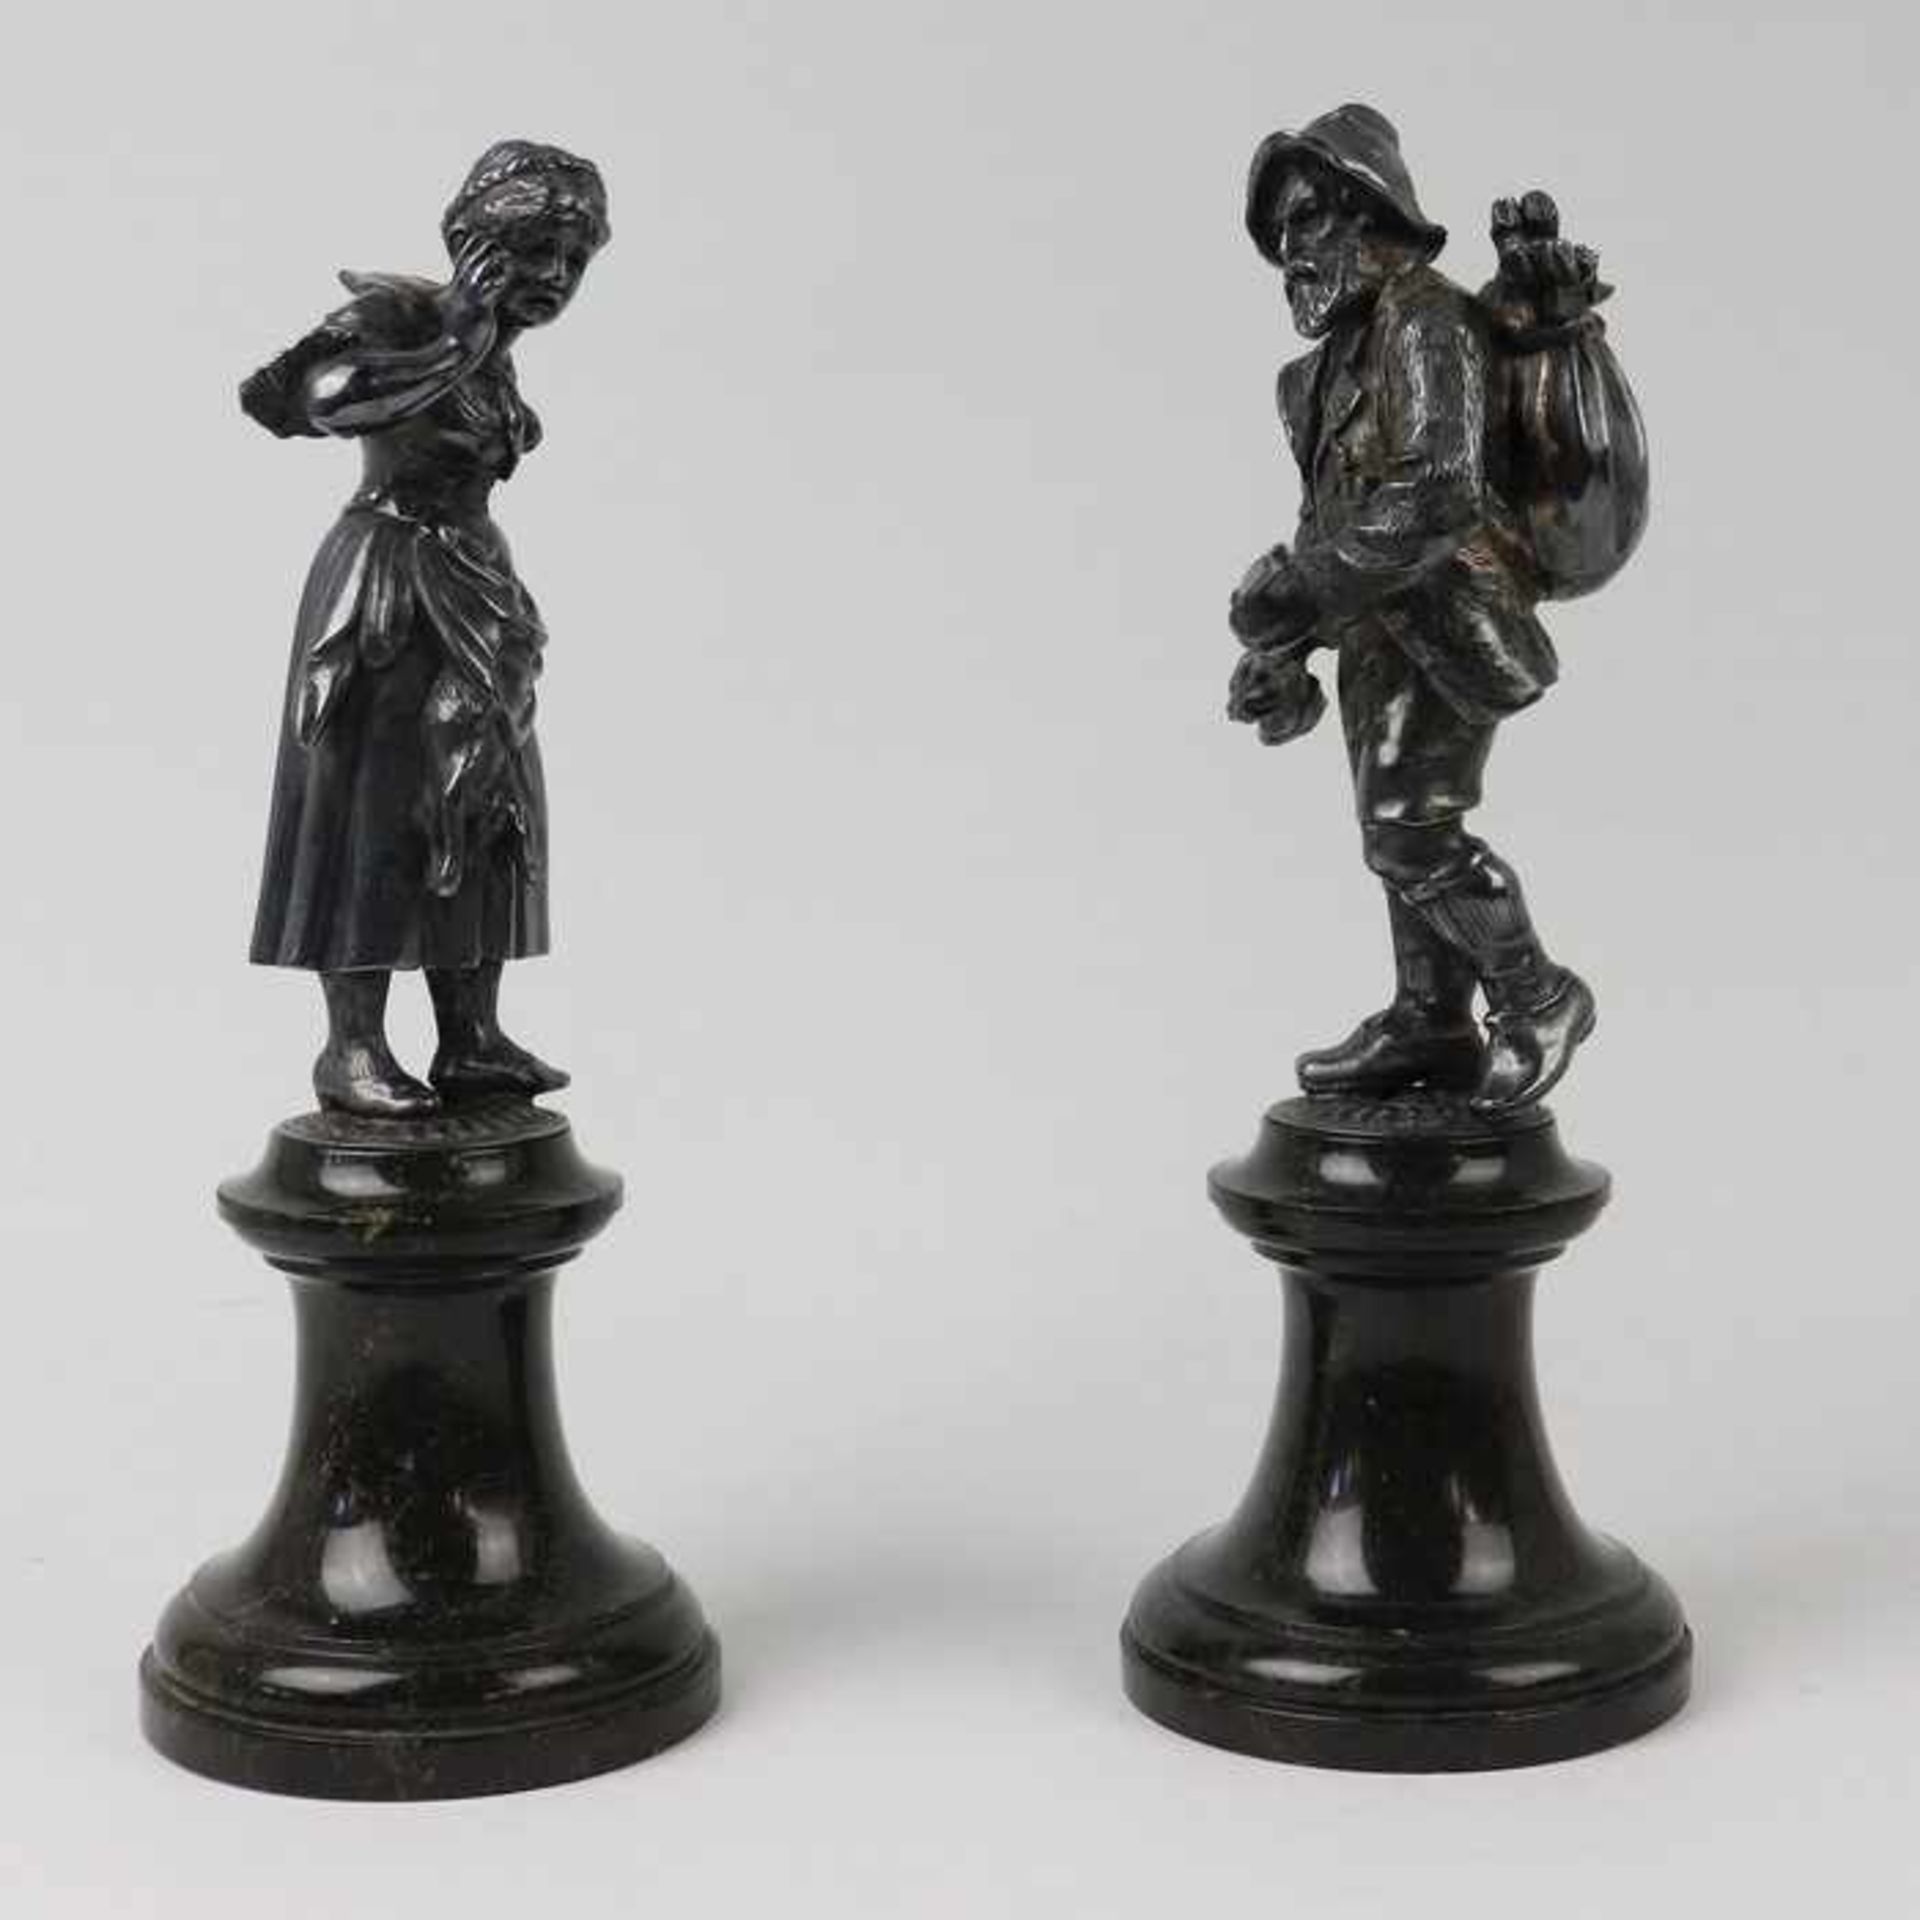 Figurenpaarum 1910/20, Metall, versi., 2 vollplastische Figuren, ein Jäger m. Beute ein Gewehr in - Bild 4 aus 6